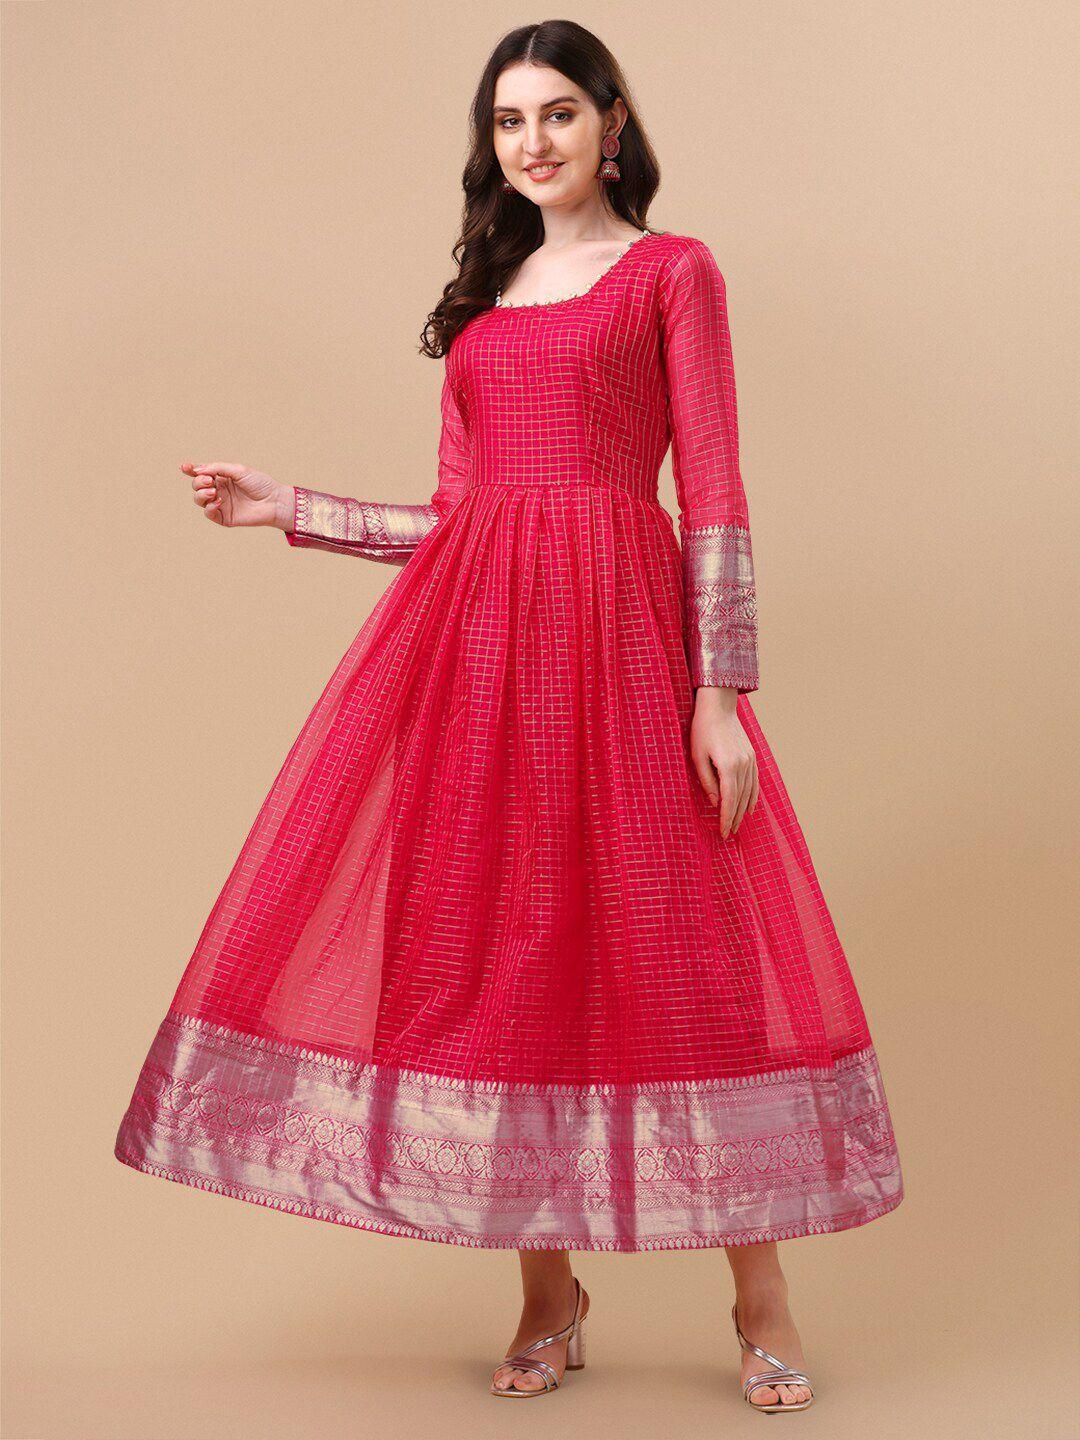 vidraa-western-store-red-ethnic-motifs-jacquard-maxi-dress